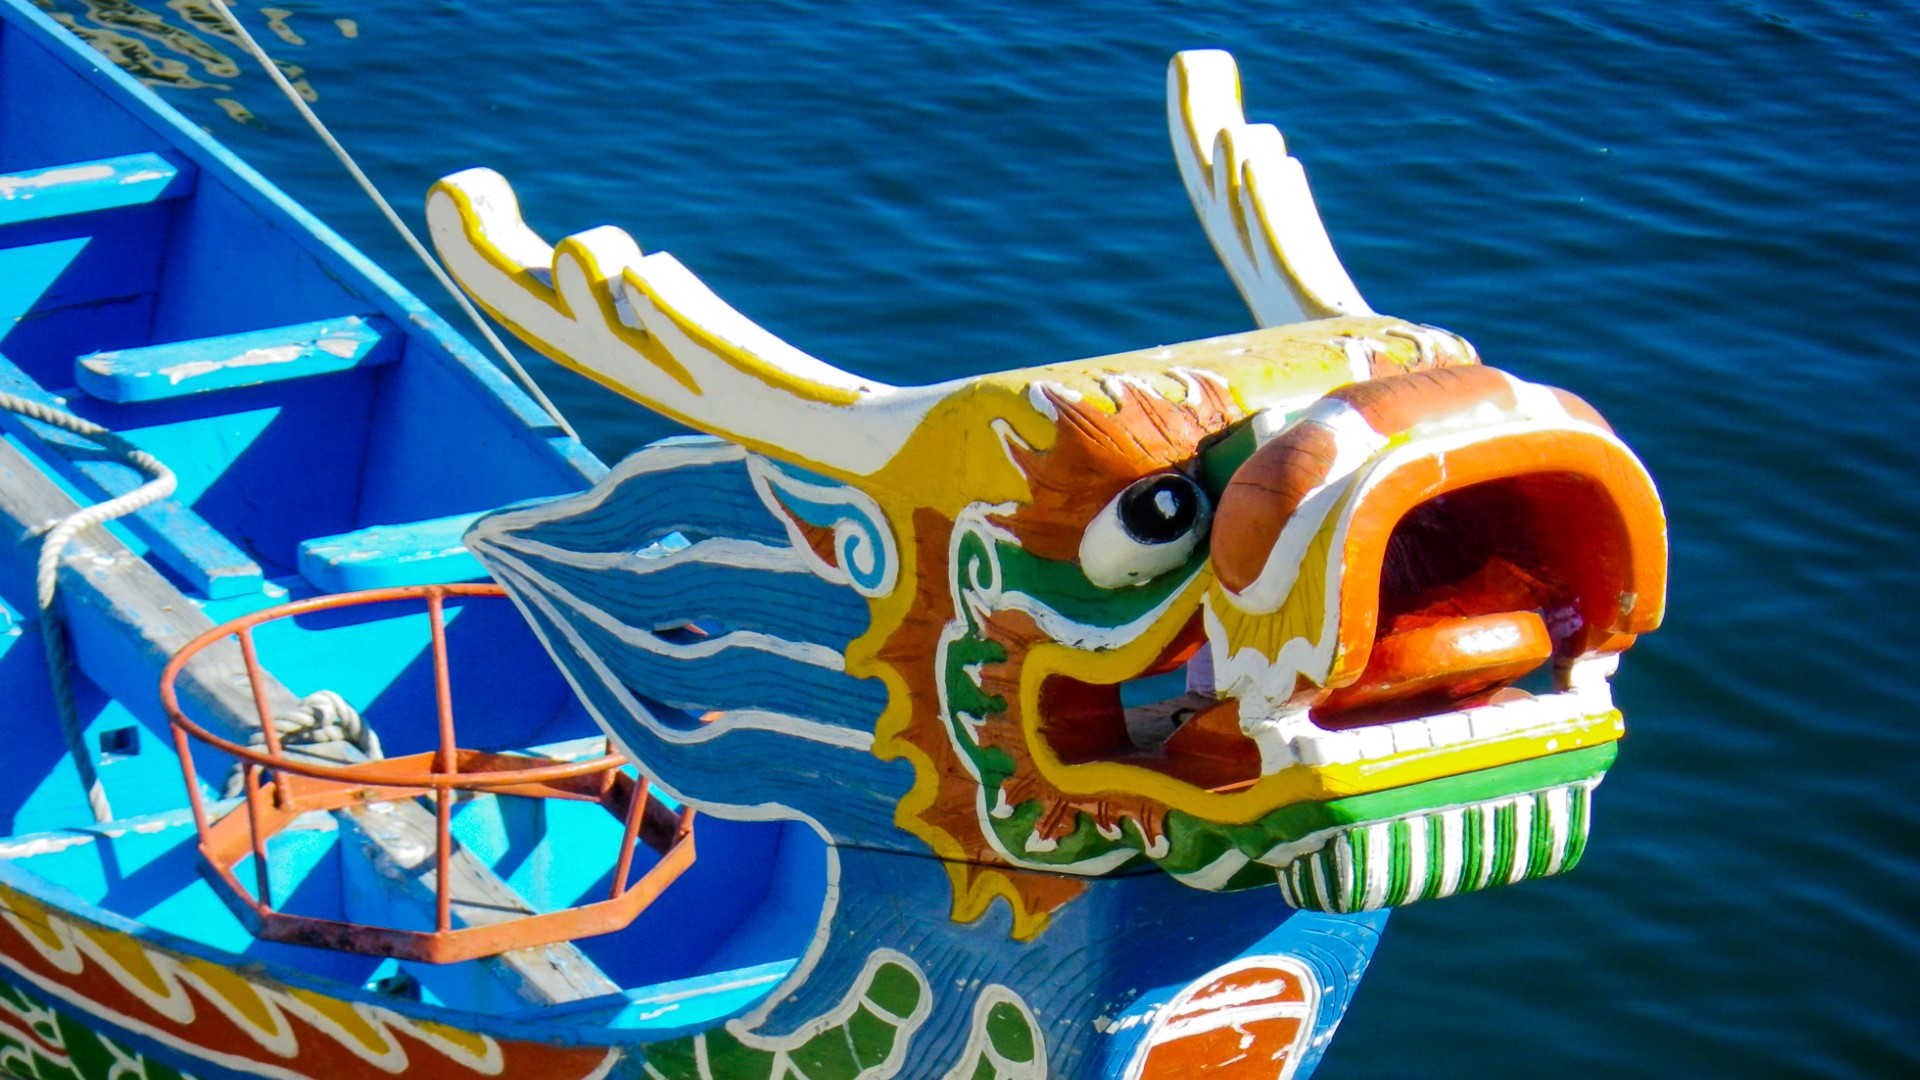 When is dragon boat festival 2021